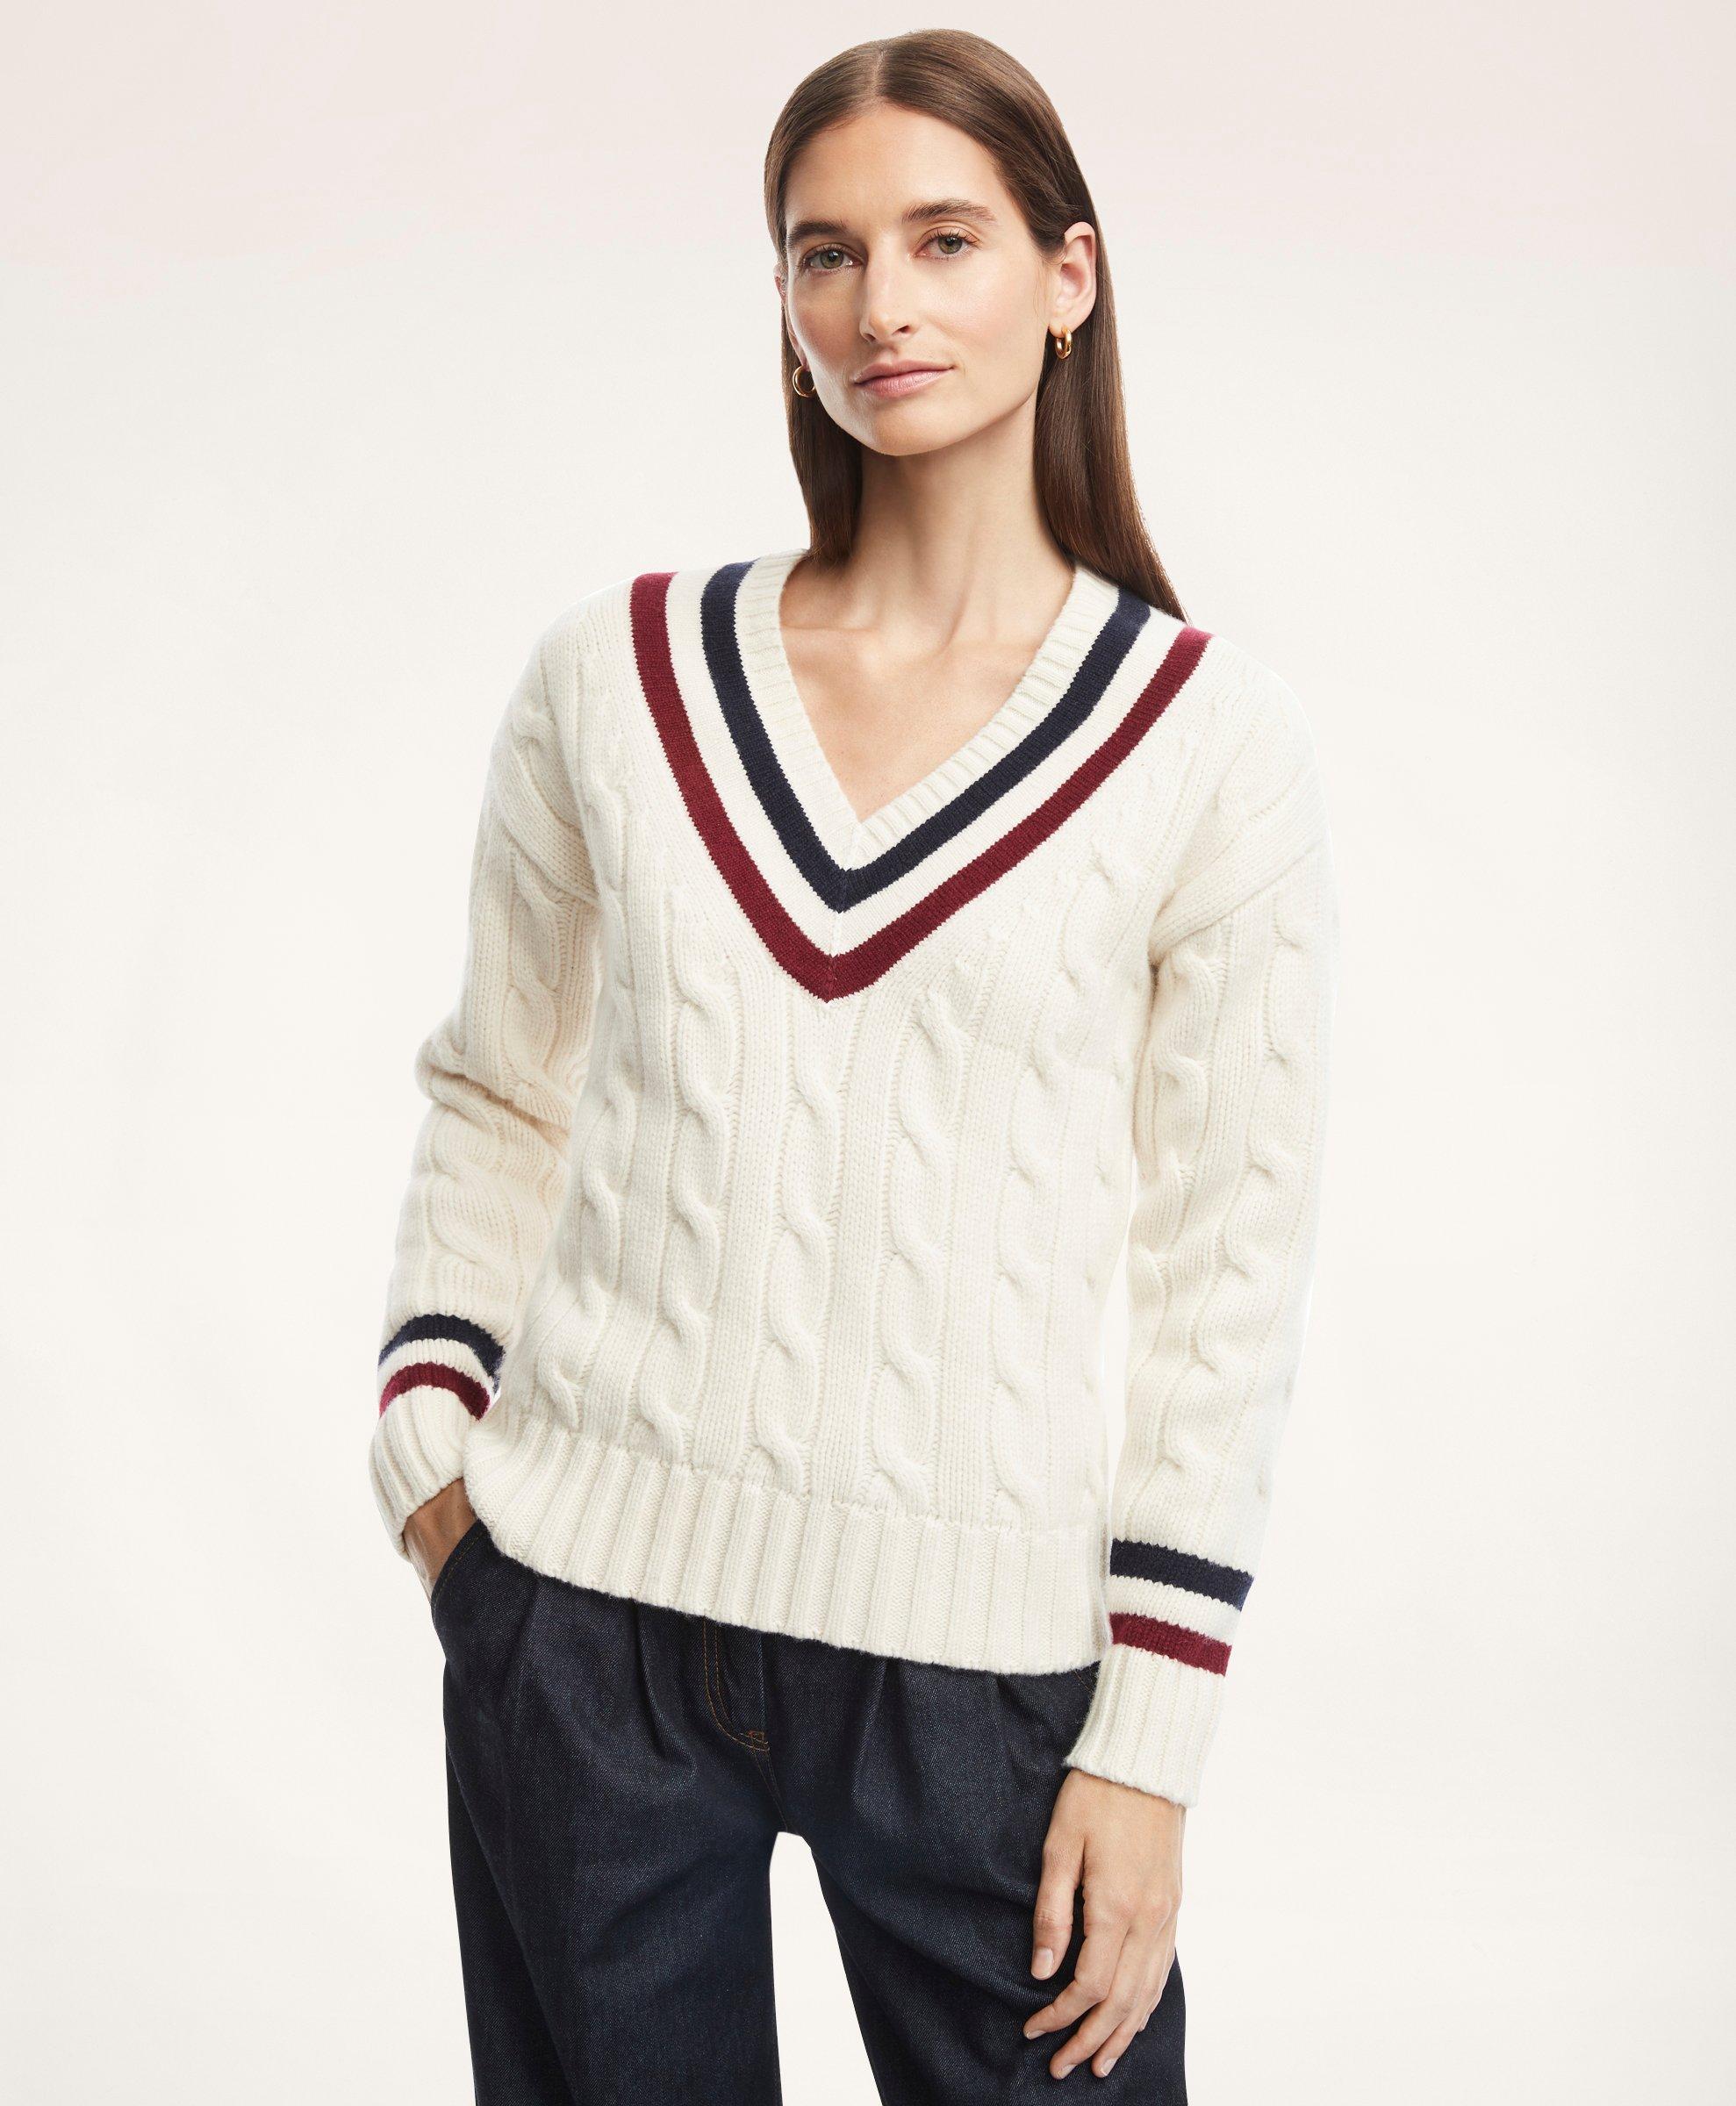 Merino Wool Cashmere Tennis Sweater